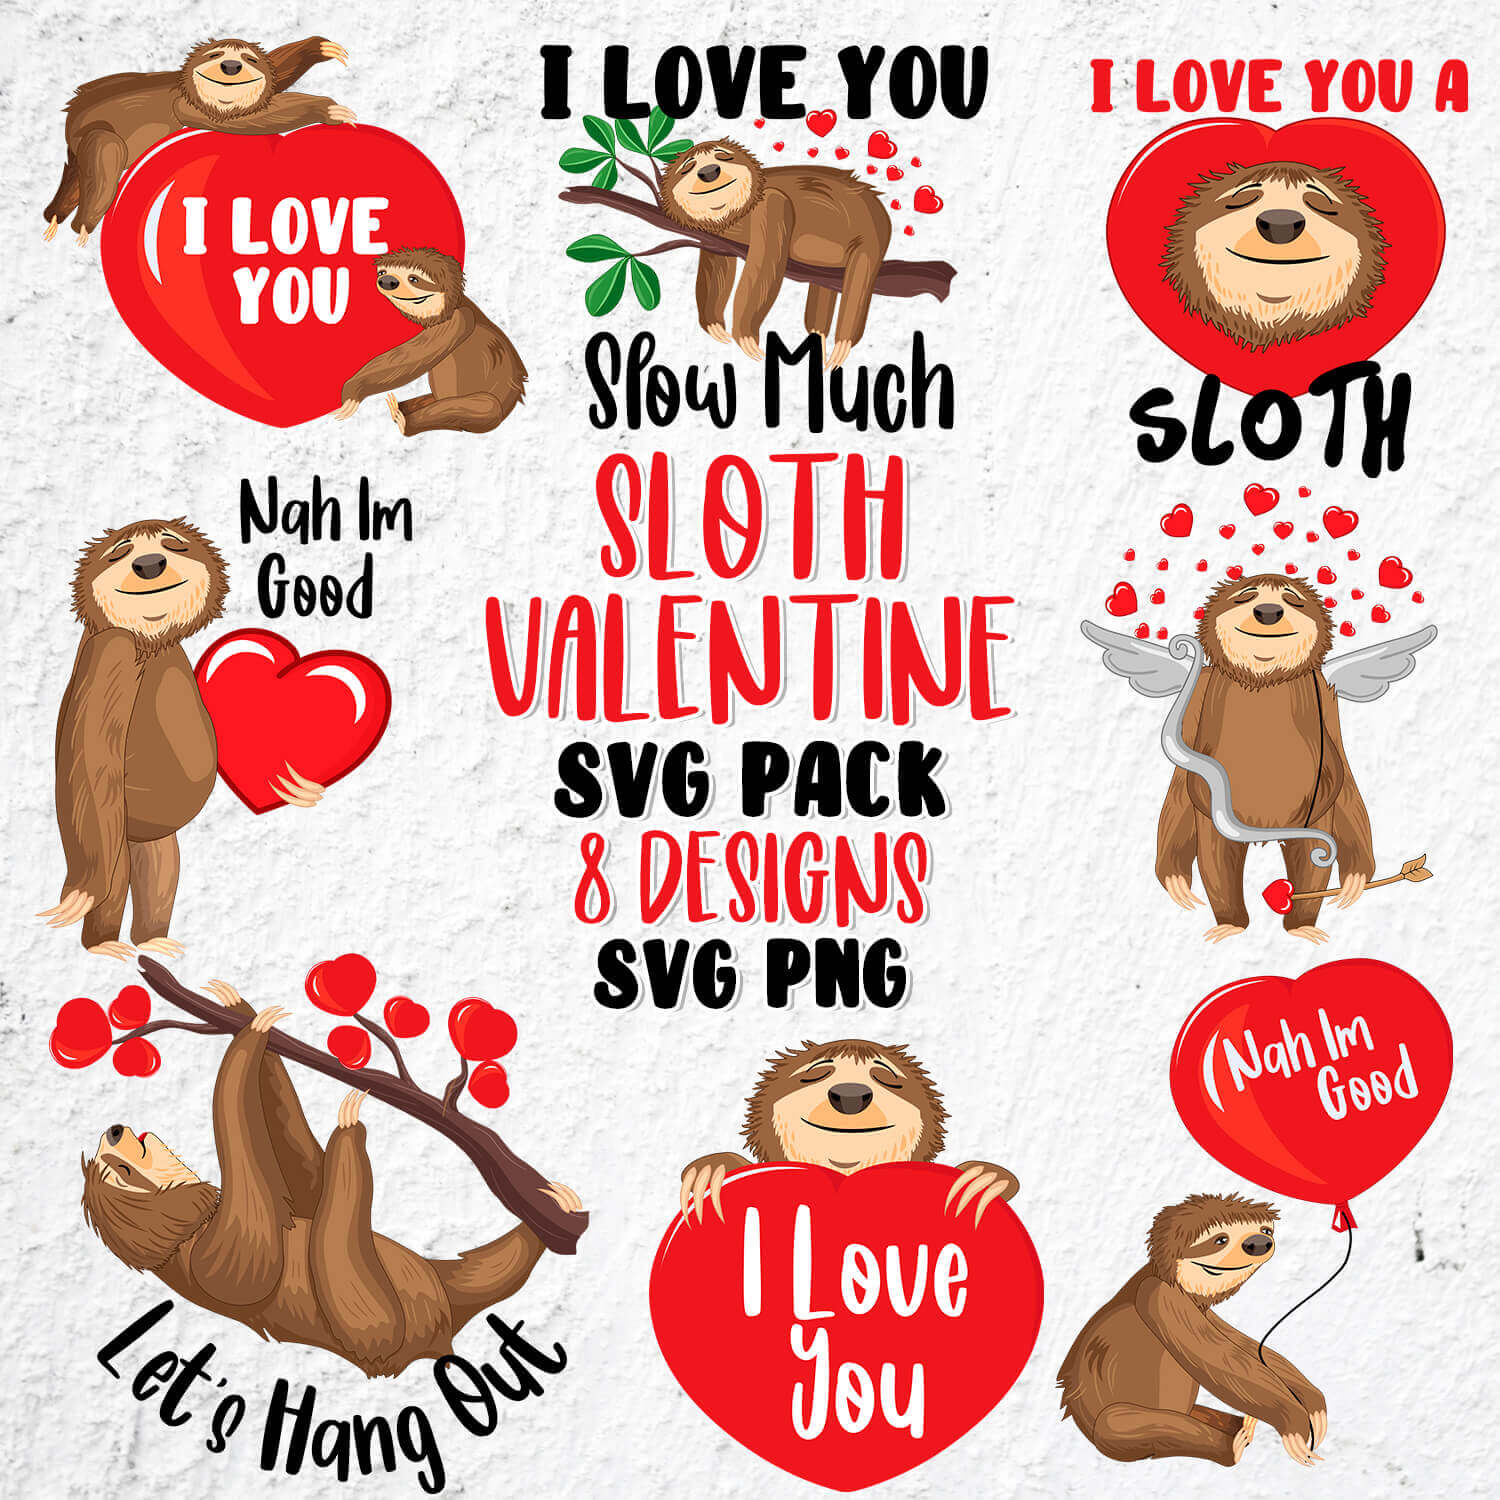 Slotty valentine's day svg bundle.